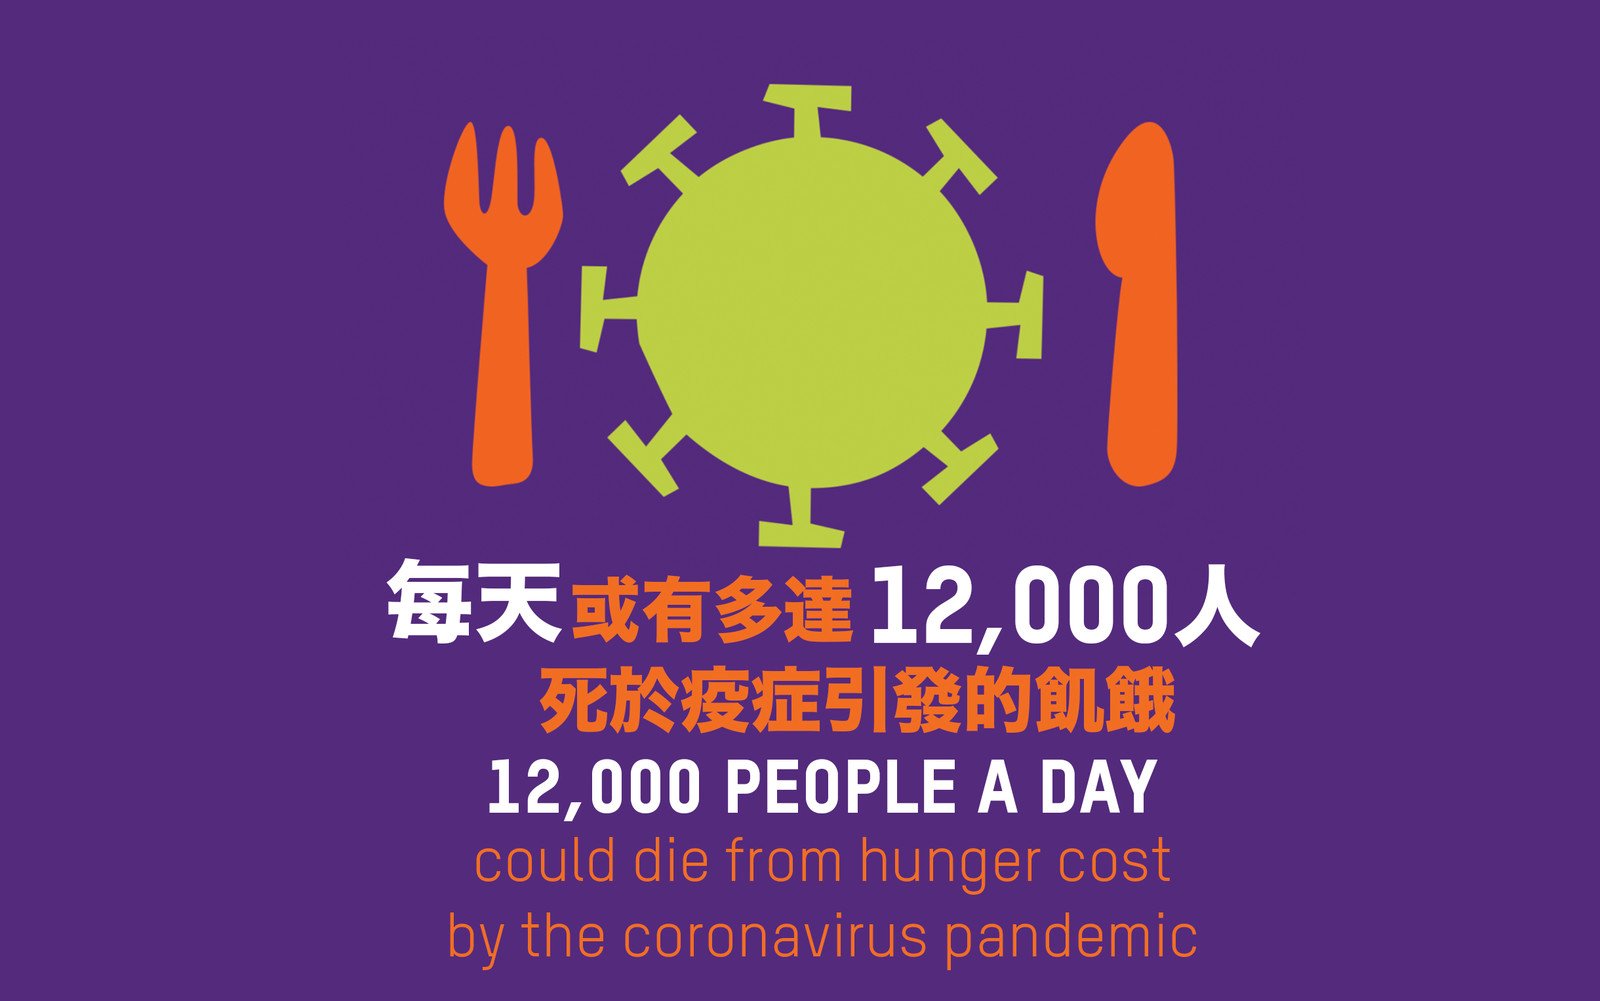 乐施会警告︰到今年底，全球每日或有多达12,000人因新冠肺炎而饿死，比遭病毒夺命的人数更多